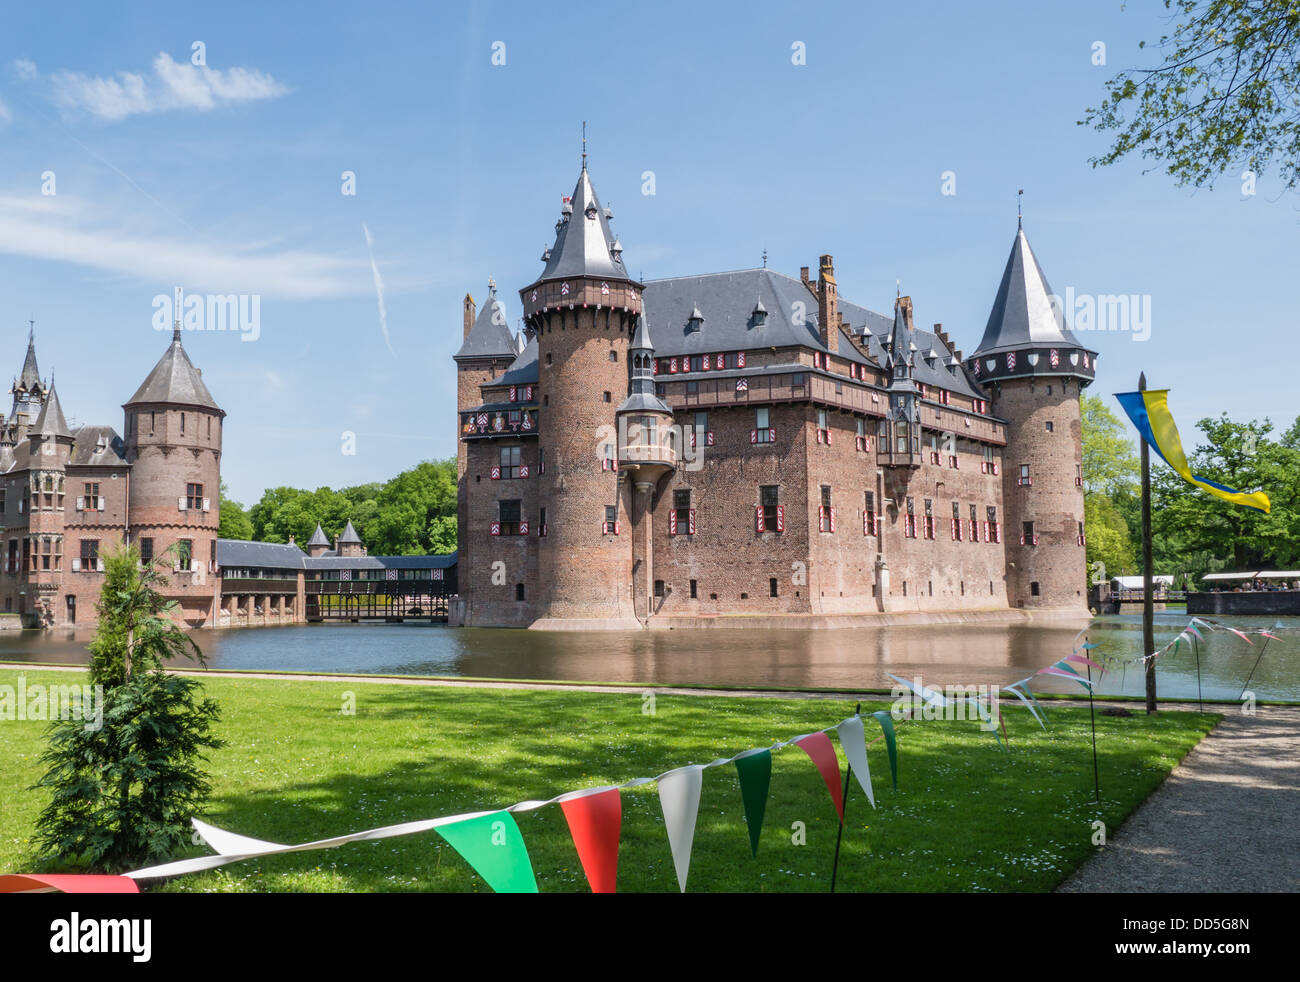 Castillo De Haar, en los Países Bajos es una fortaleza medieval con torres, murallas, canales y puentes levadizos Foto de stock